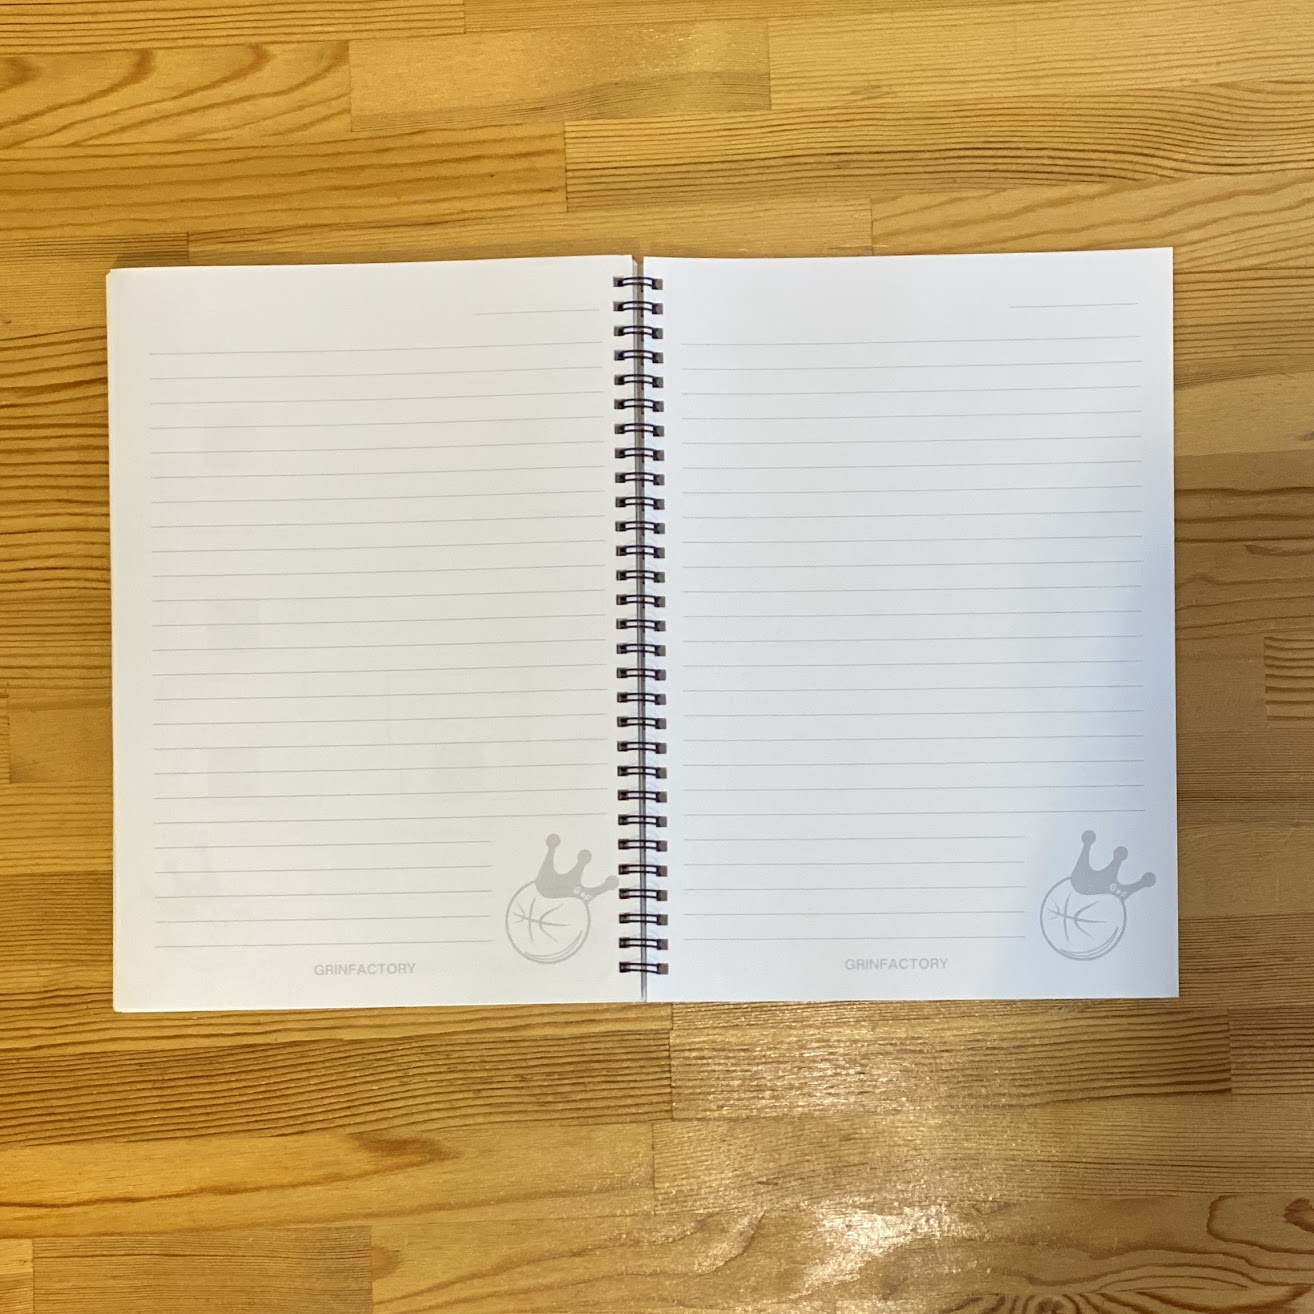 バスケットボール練習ノート/B５サイズ　10冊セット